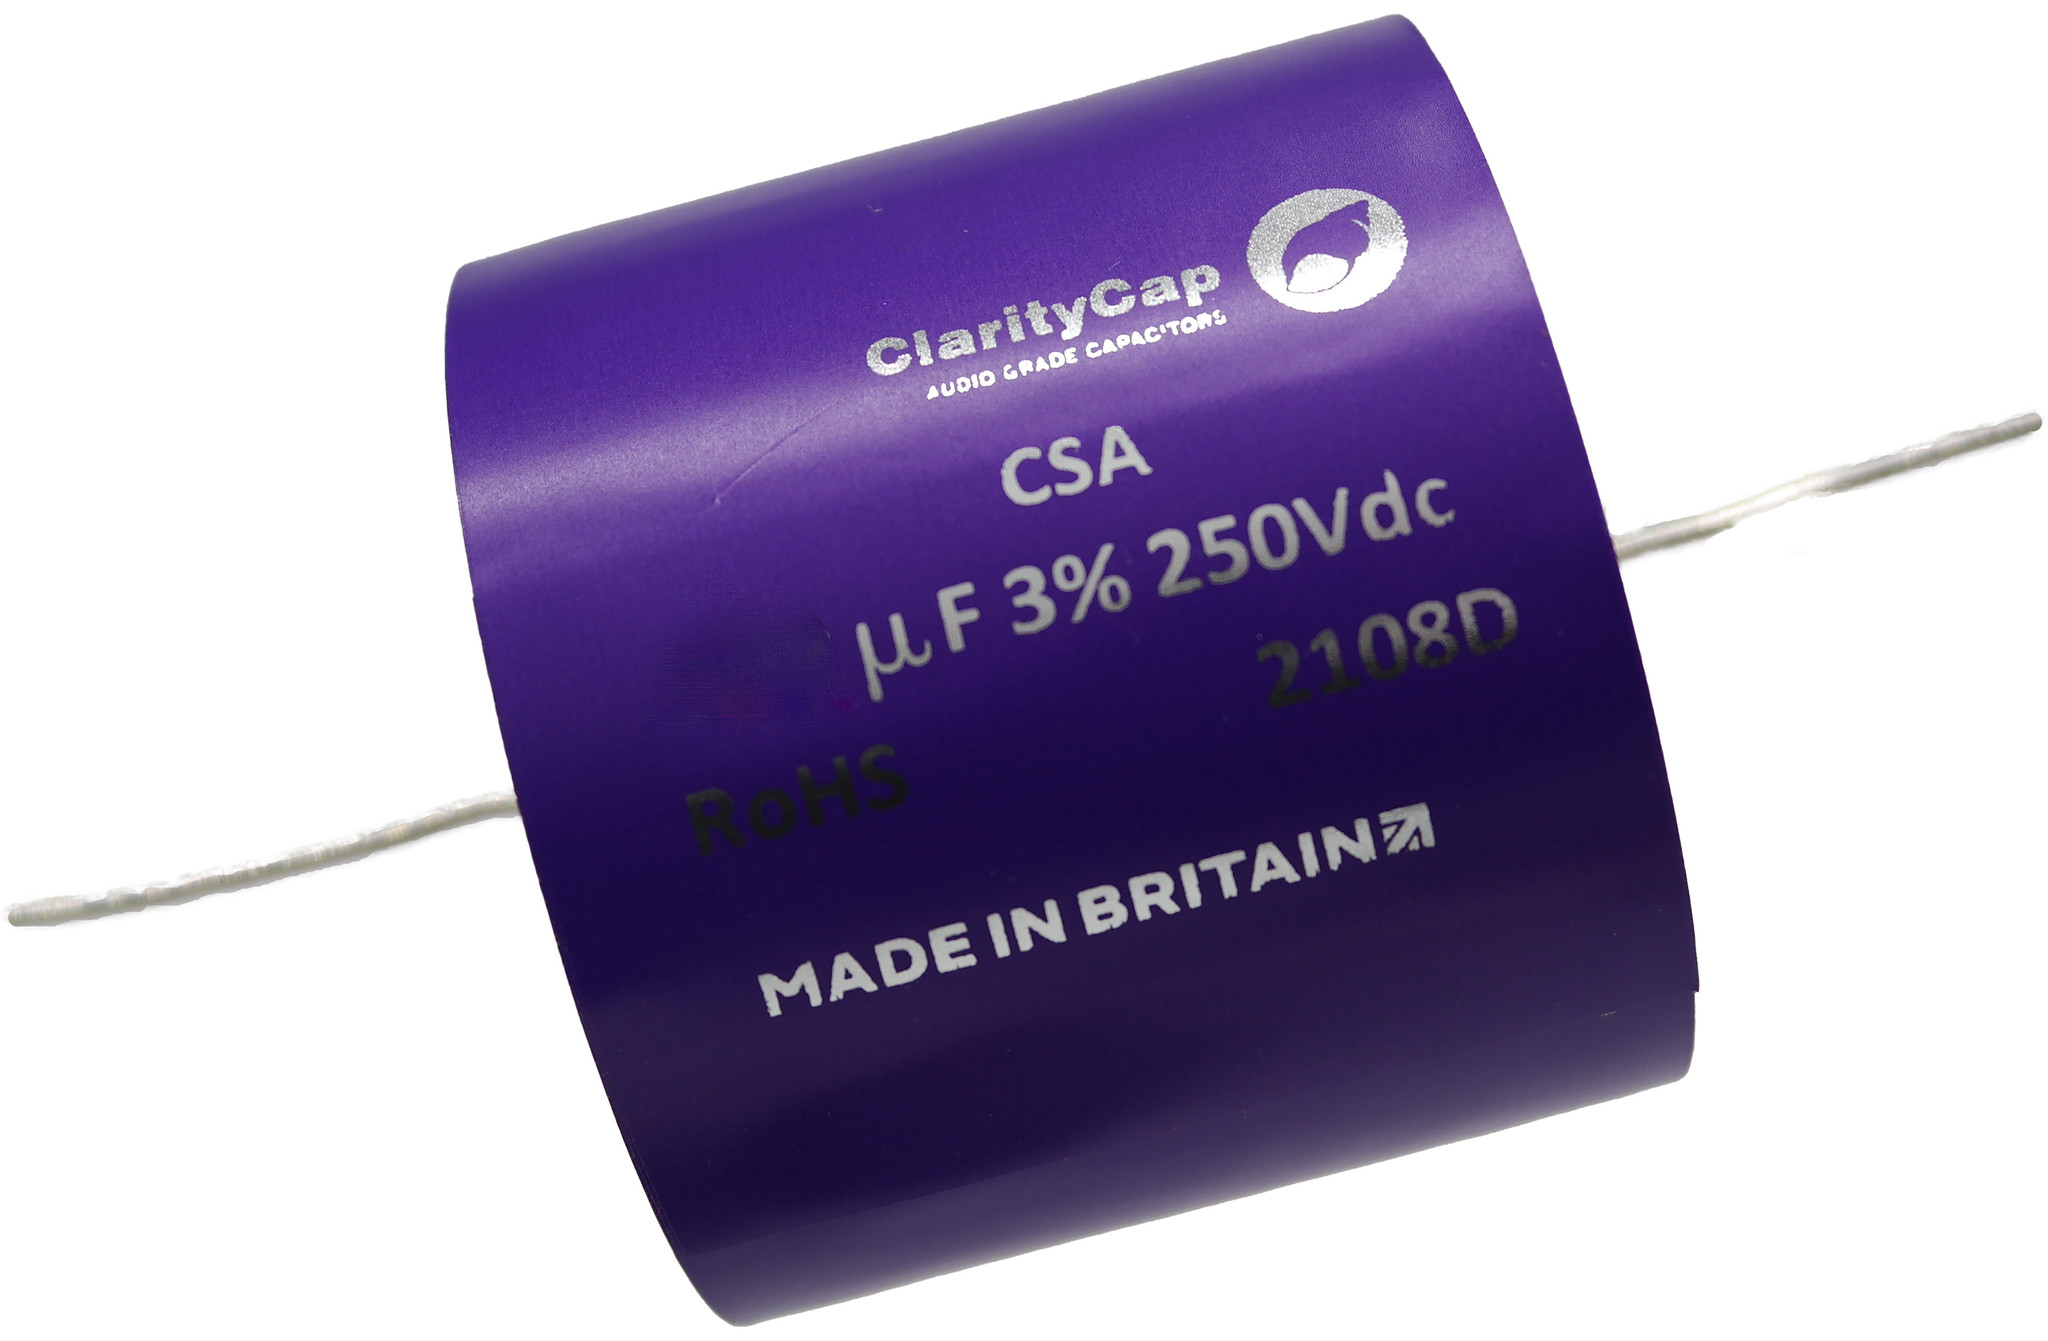 Condensatoare - Condensator film ClarityCap CSA56uH250Vdc| 56 µF | 3% | 250 V, audioclub.ro